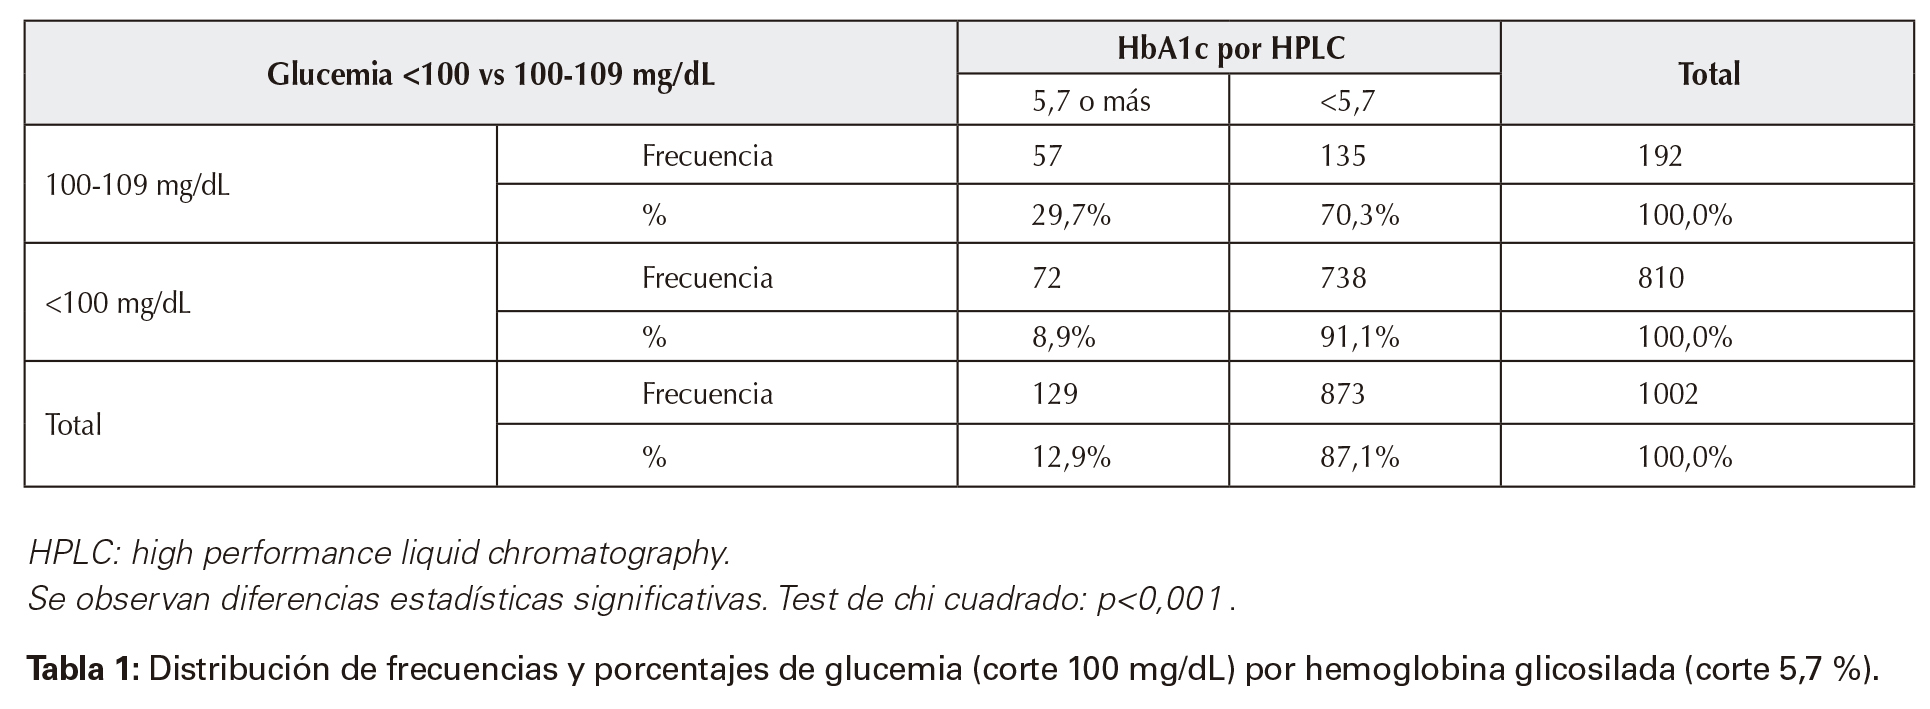 Distribución de frecuencias y porcentajes de glucemia (corte 100 mg/dL) por hemoglobina glicosilada (corte 5,7%).